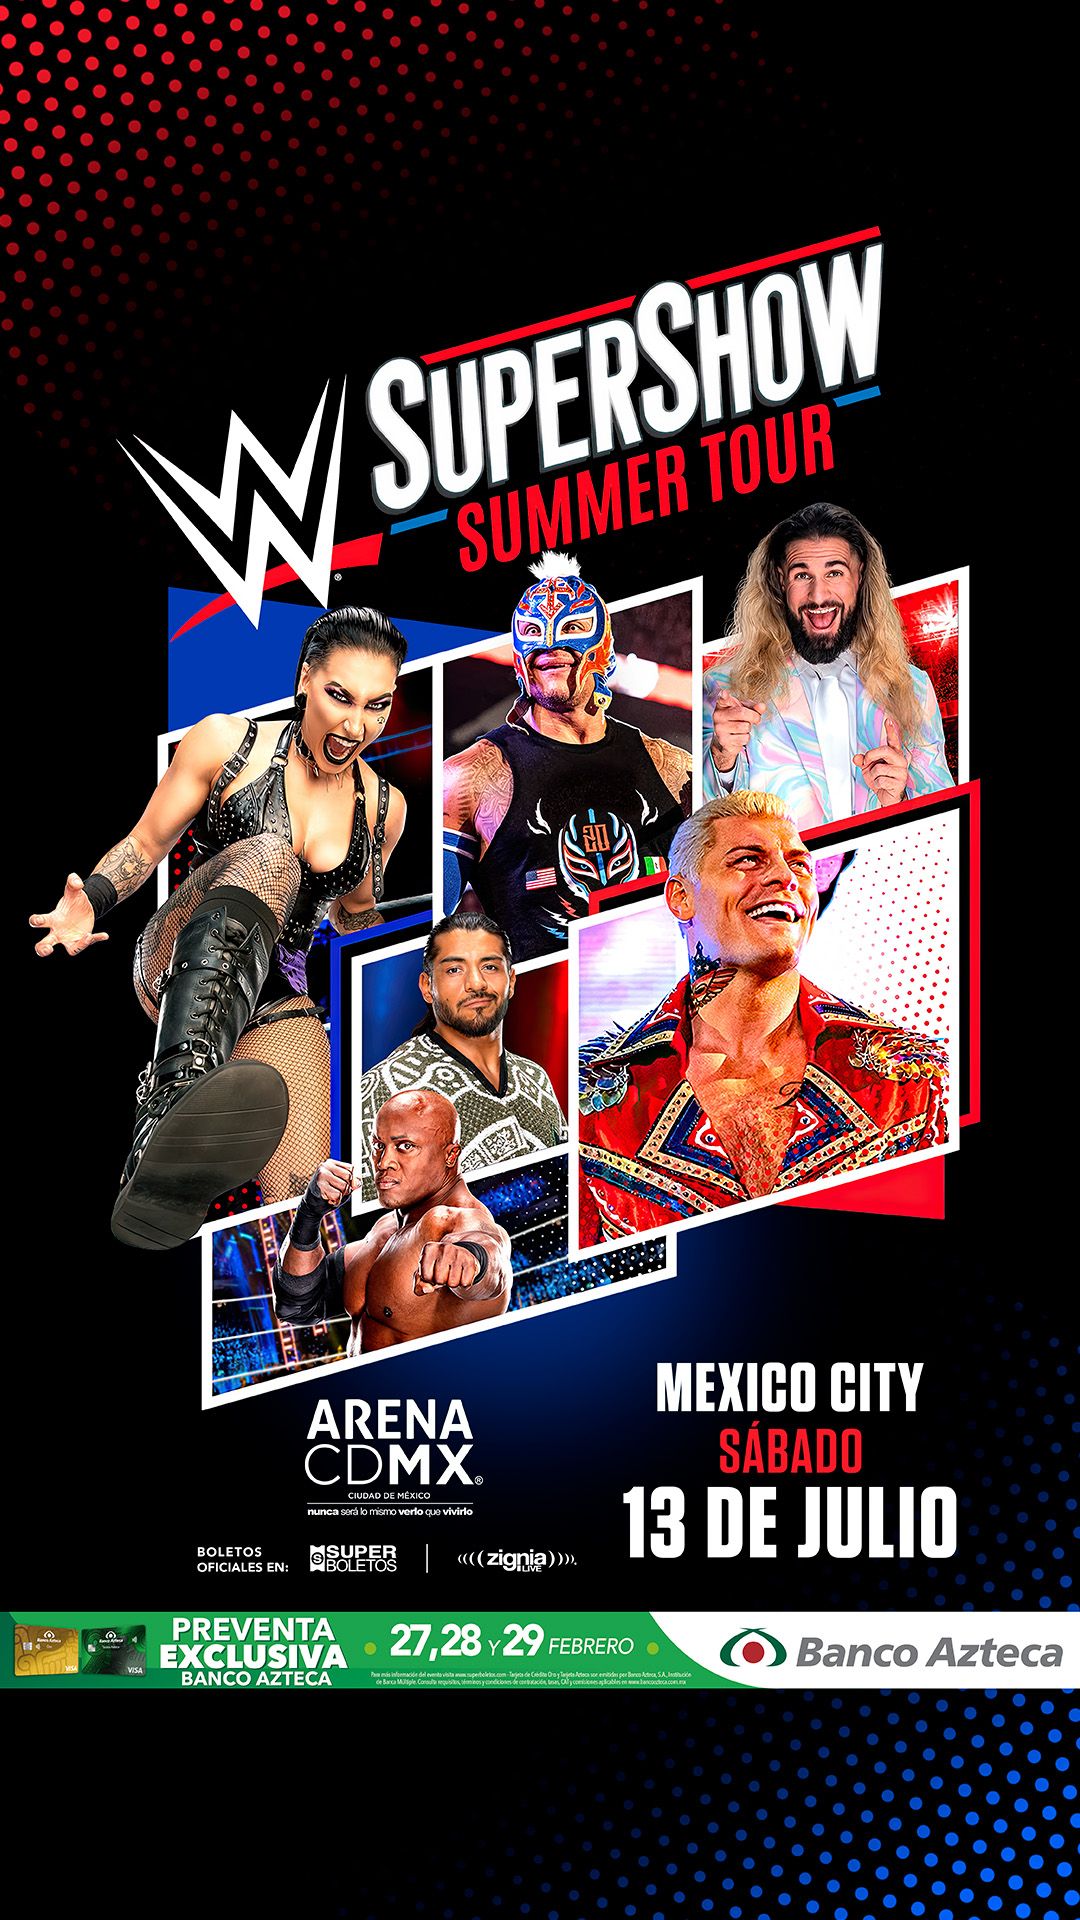 La gira de verano del supershow de la WWE regresa a CDMX y Monterrey este mes de julio